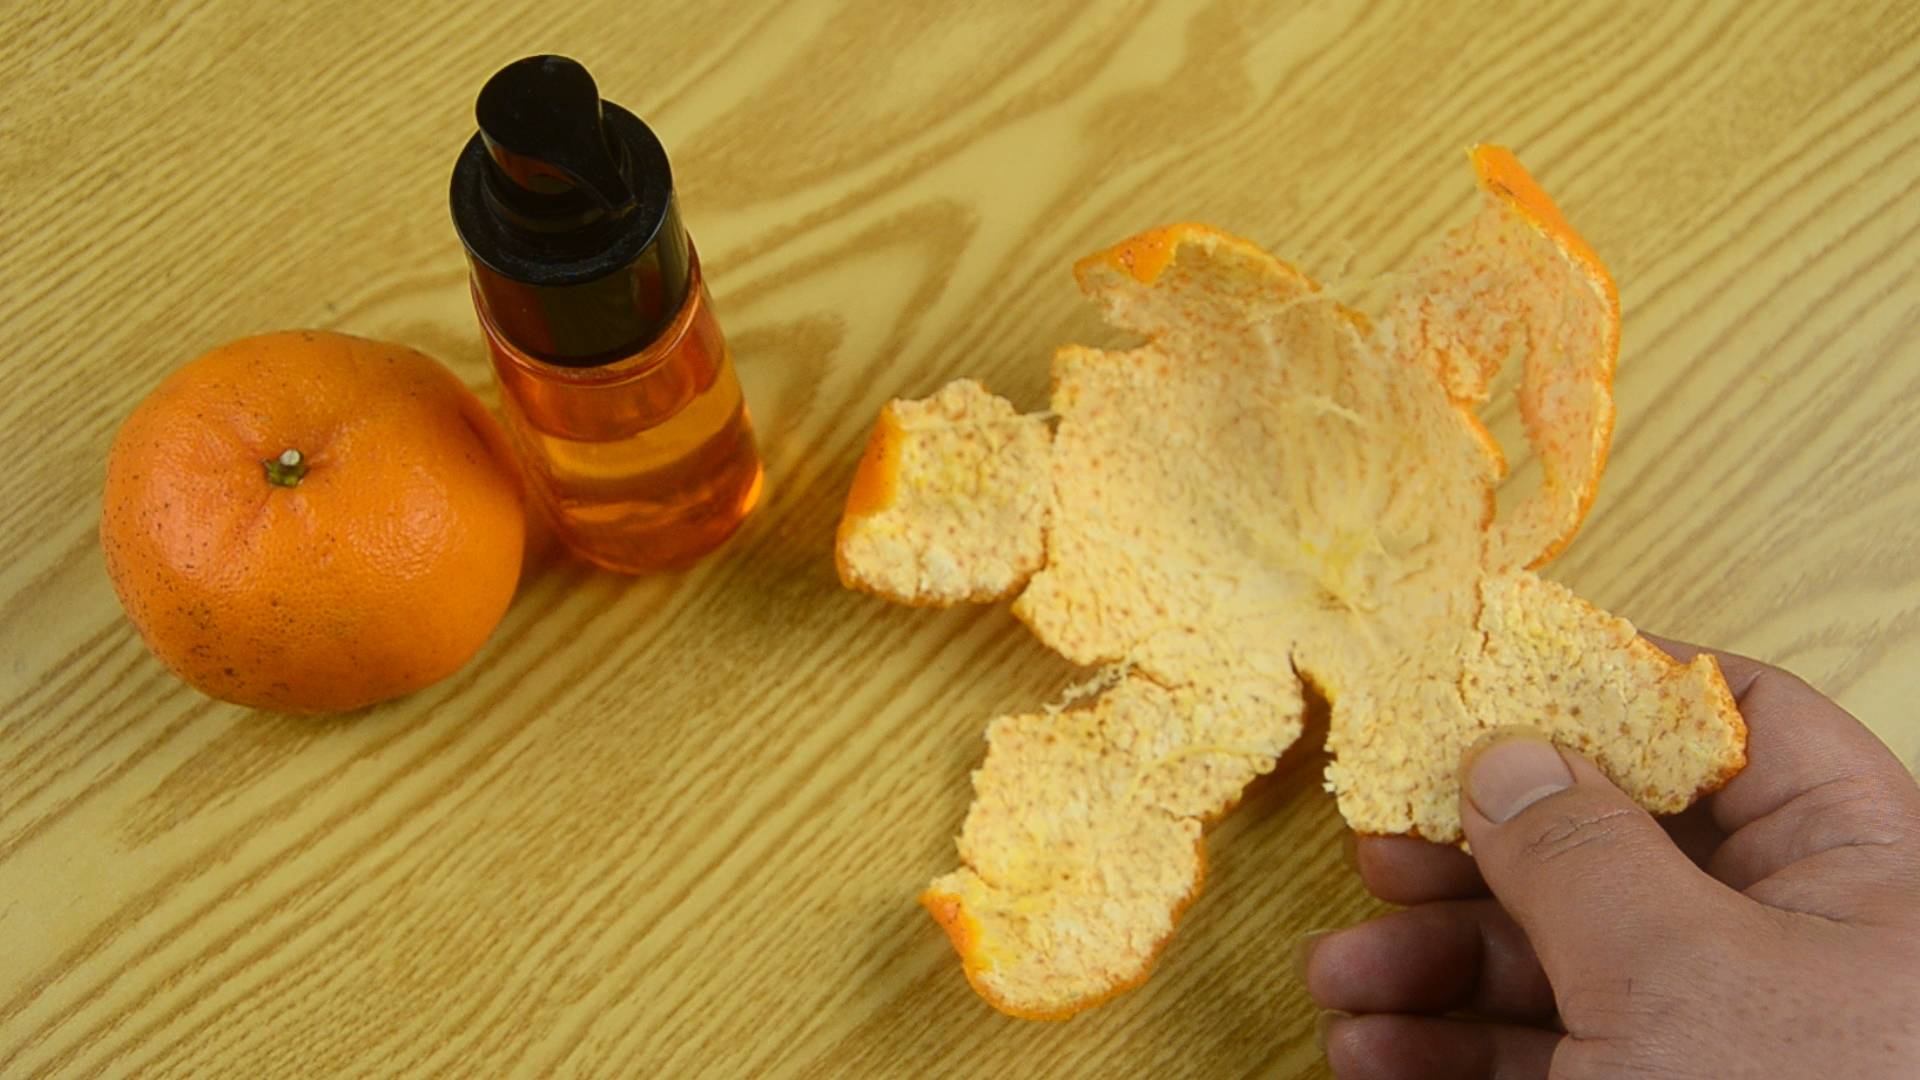 原创橘子皮不要丢,教你自制橘子精油,防晕车防蚊虫,味道比香水好使